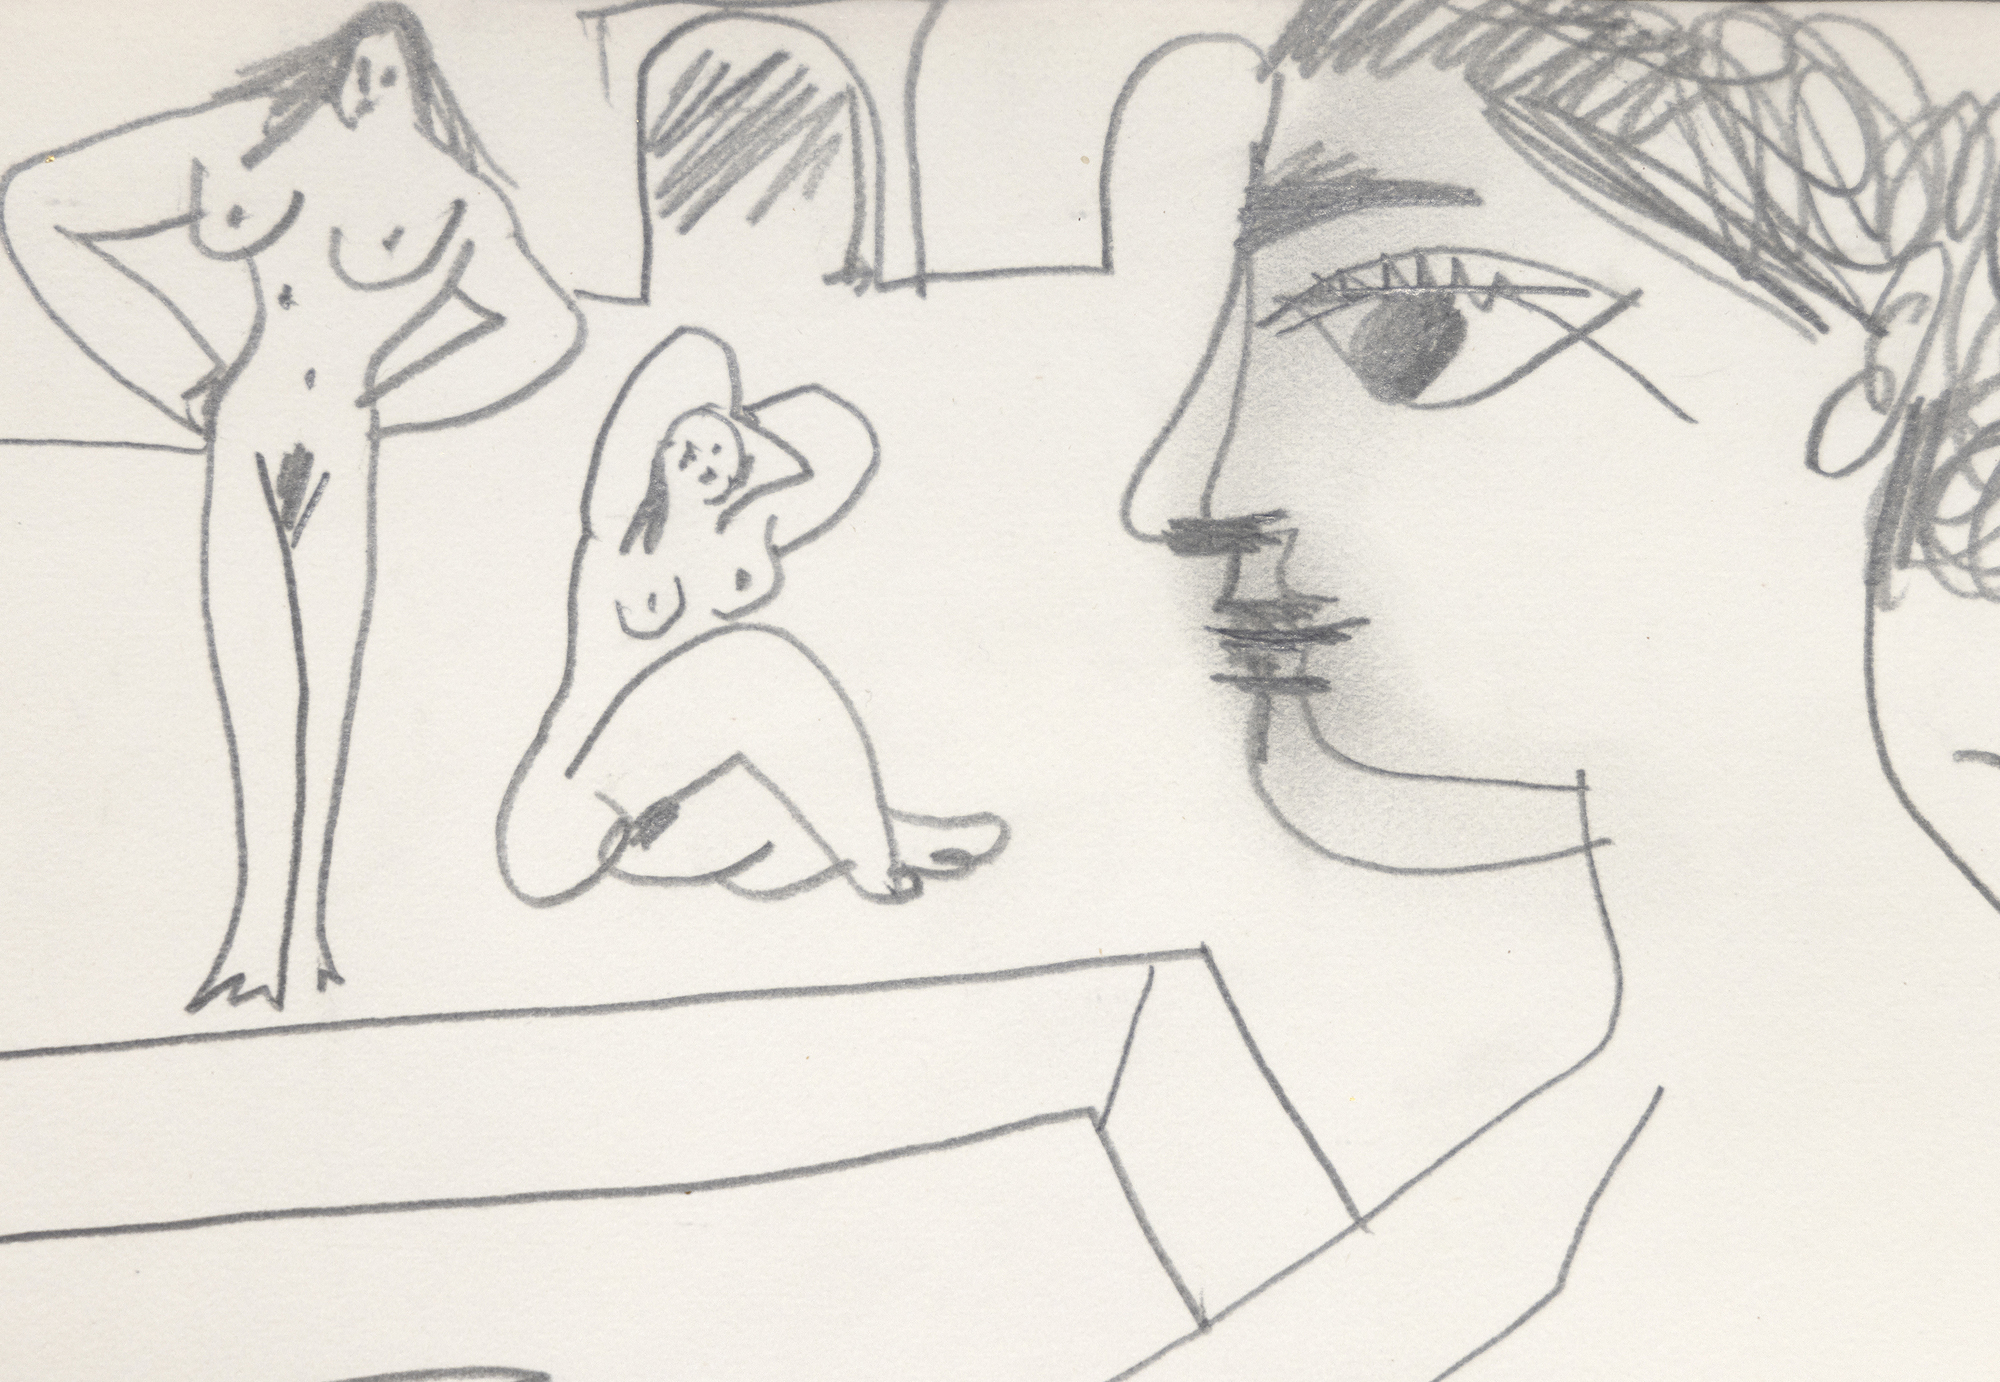 Las figuras de Nues se desarrollan libremente en torno a una figura central de odalisca de una manera que sugiere un tema que ocupaba a Picasso ya en 1906, el de las indulgencias femeninas en un entorno de harén.  Al describir sus últimos dibujos, Picasso señaló que "uno nunca sabe lo que va a salir, pero en cuanto el dibujo se pone en marcha, nace una historia o una idea... Me paso hora tras hora mientras dibujo, observando a mis criaturas y pensando en las locuras que hacen... Es muy divertido, créeme". Nues es una evocación de esa apreciación, un retozo libre como sólo Picasso puede lograr. Entre las muchas poses, la figura abreviada nadando en la piscina es especialmente encantadora.